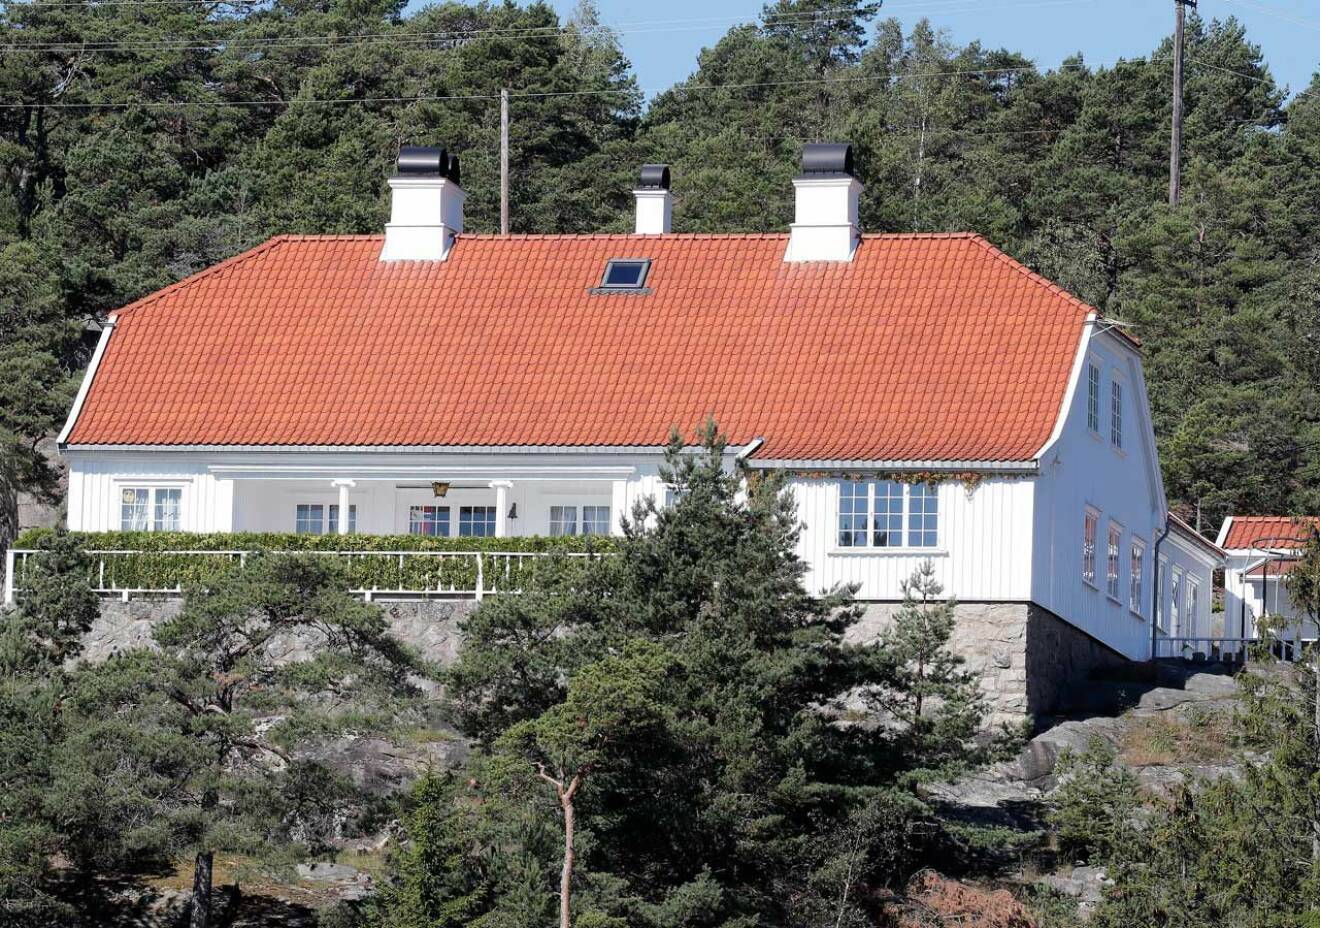 Prinsessan Märtha Louises sommarhus Bloksbjerg vid Oslofjorden. Det har varit i den norska kungafamiljens ägo i mer än 70 år.